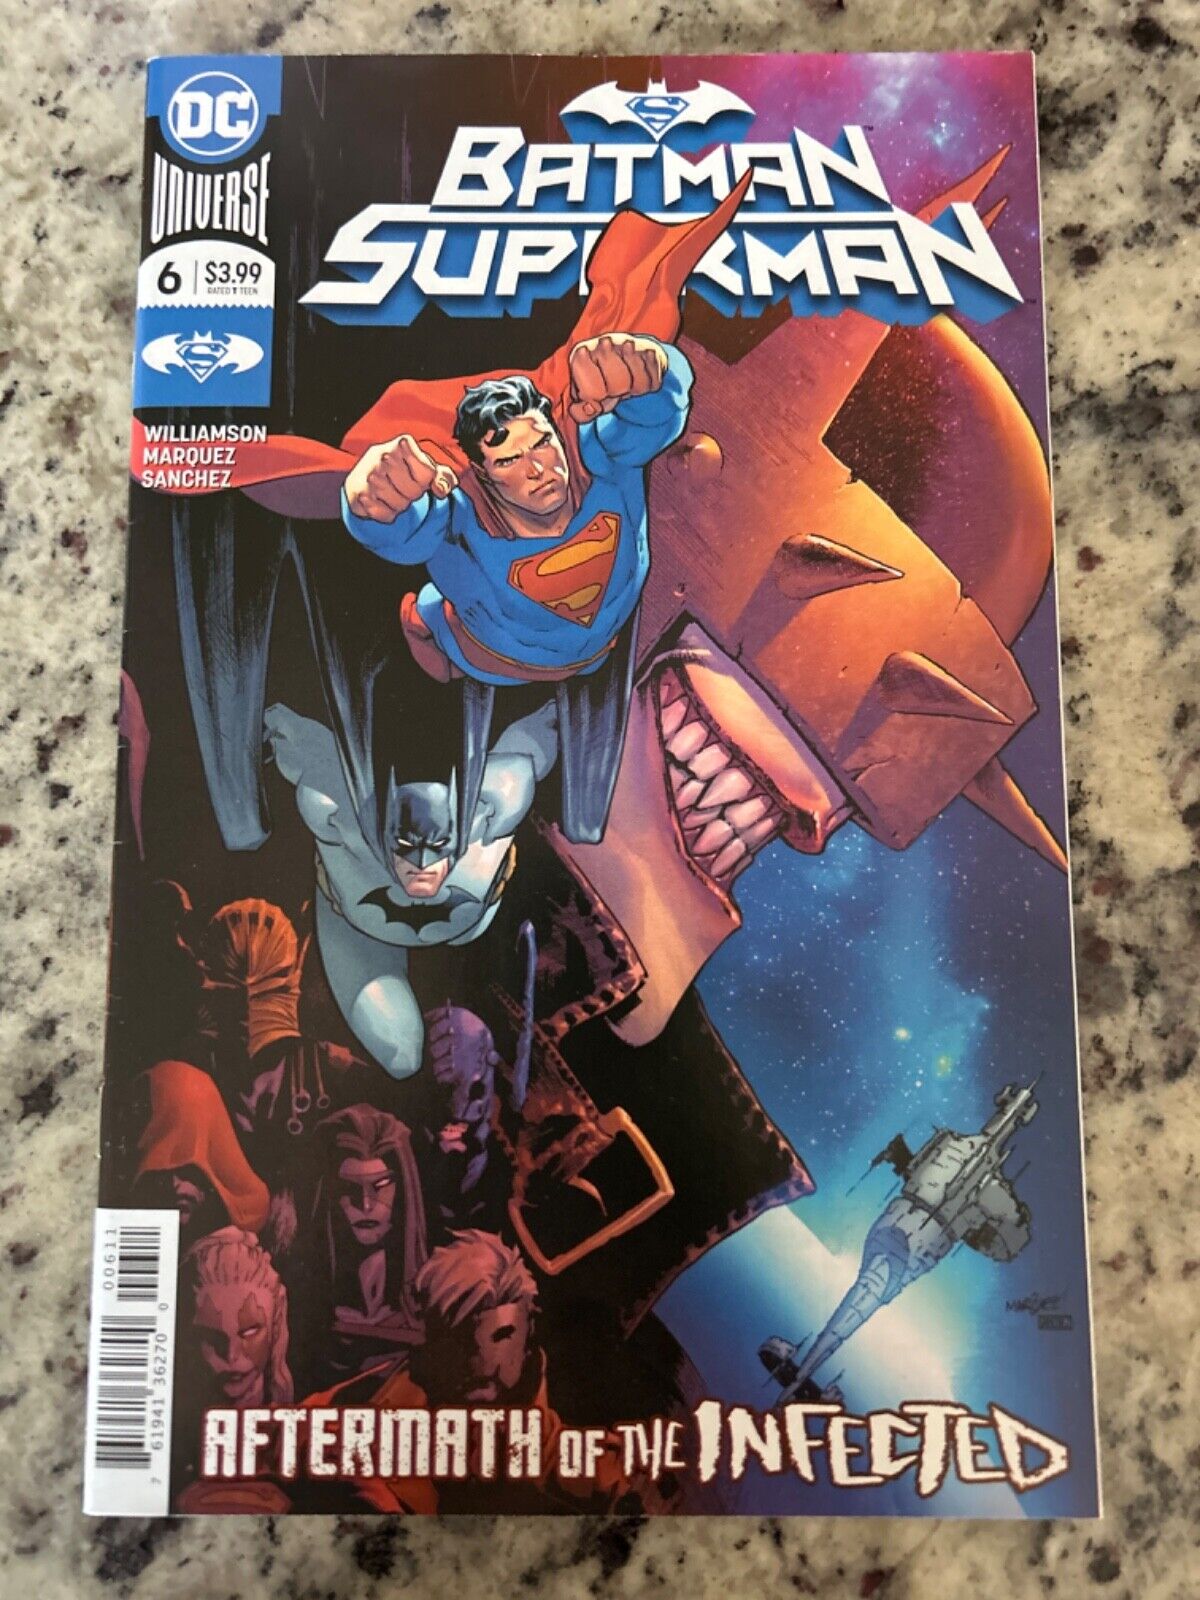 Batman/Superman #6 Vol. 2 (DC, 2020) NM